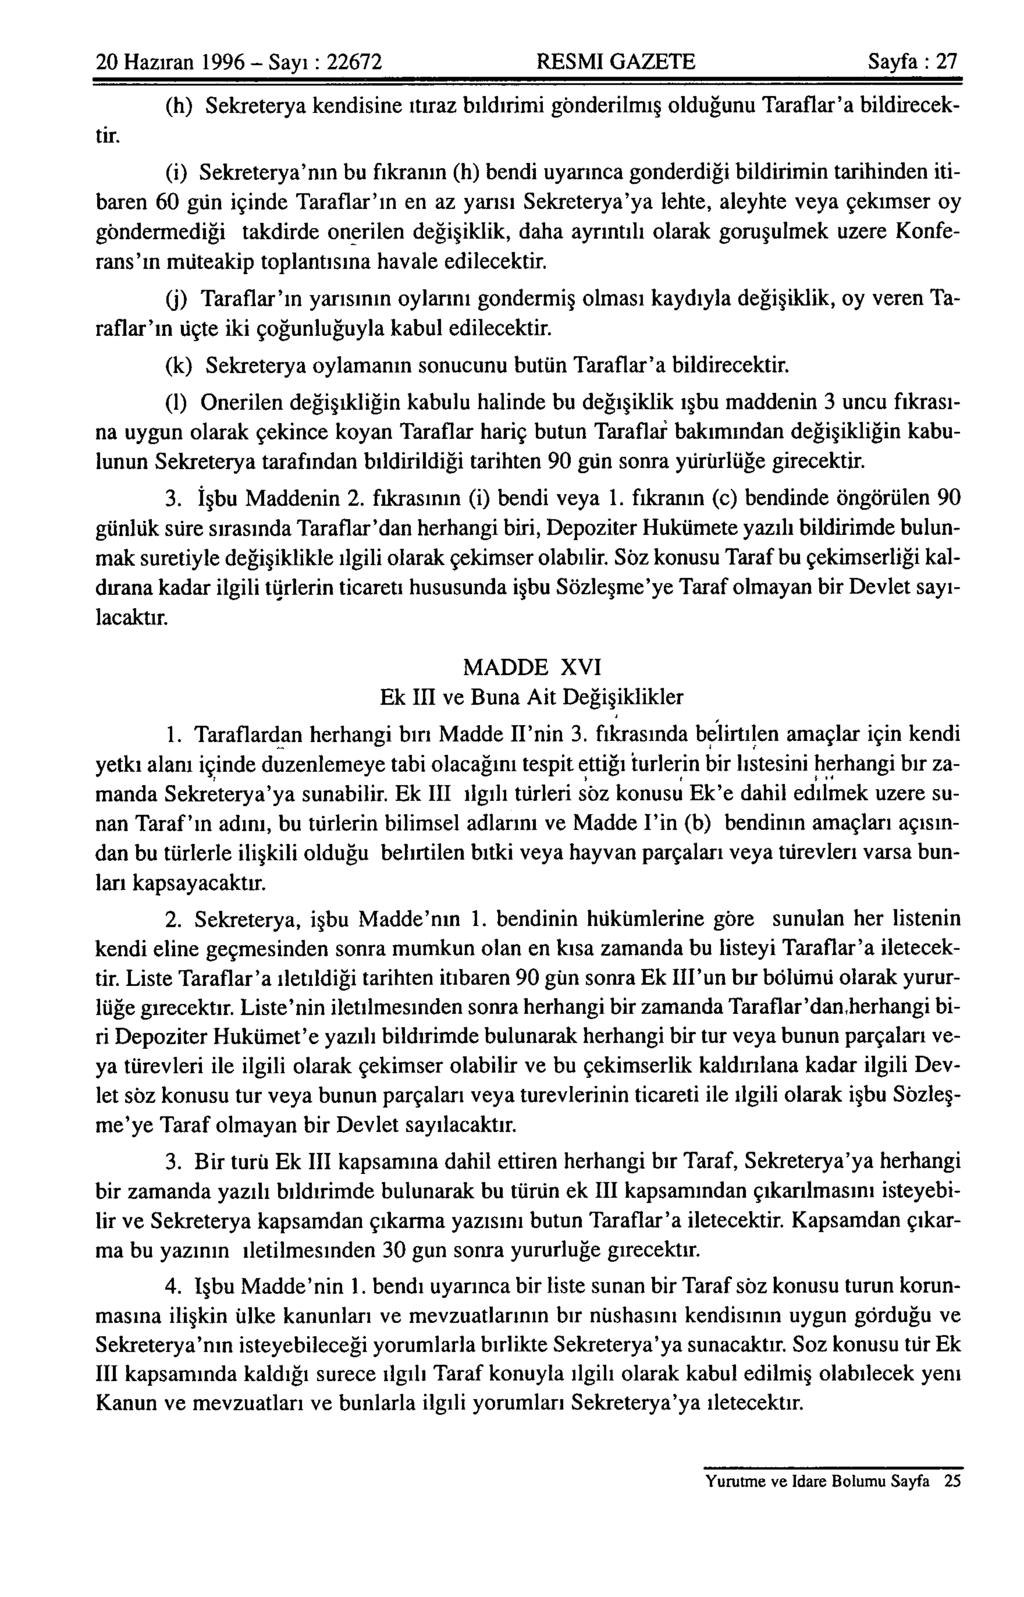 20 Haziran 1996 - Sayı: 22672 RESMI GAZETE Sayfa: 27 (h) Sekreterya kendisine itiraz bildirimi gönderilmiş olduğunu Taraflar'a bildirecektir.